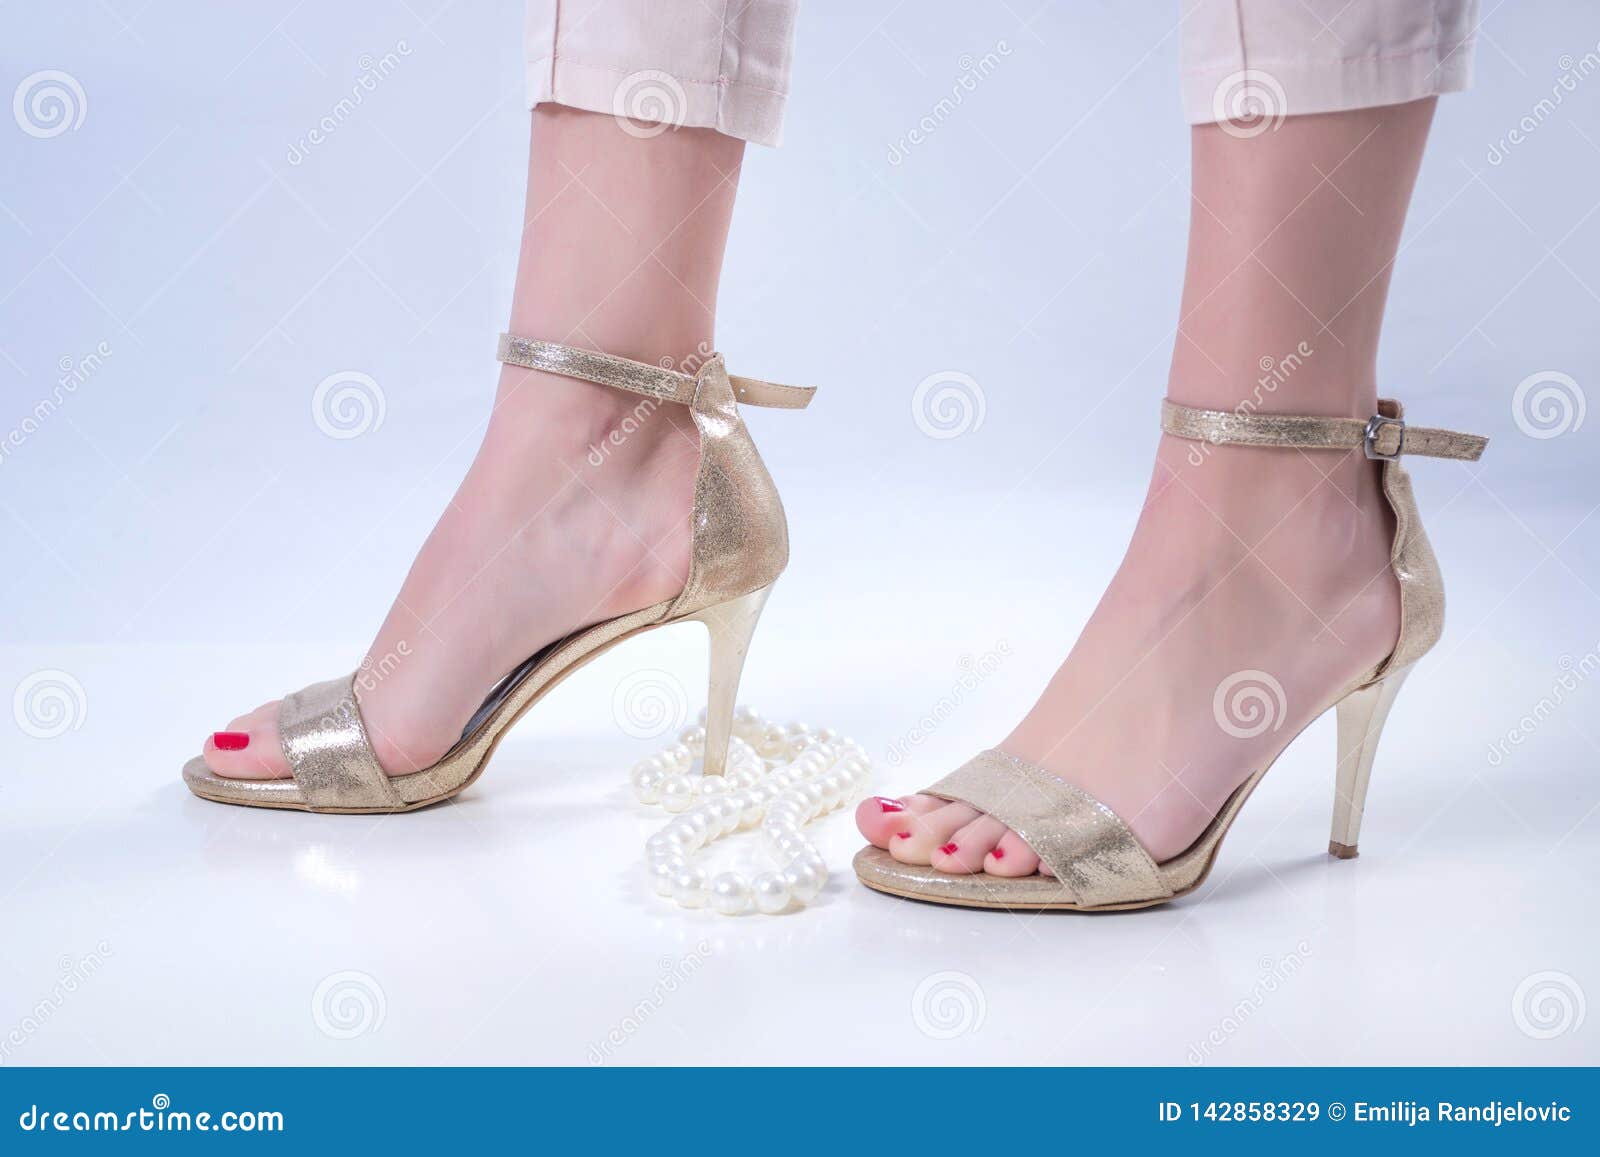 Pictures feet in heels 